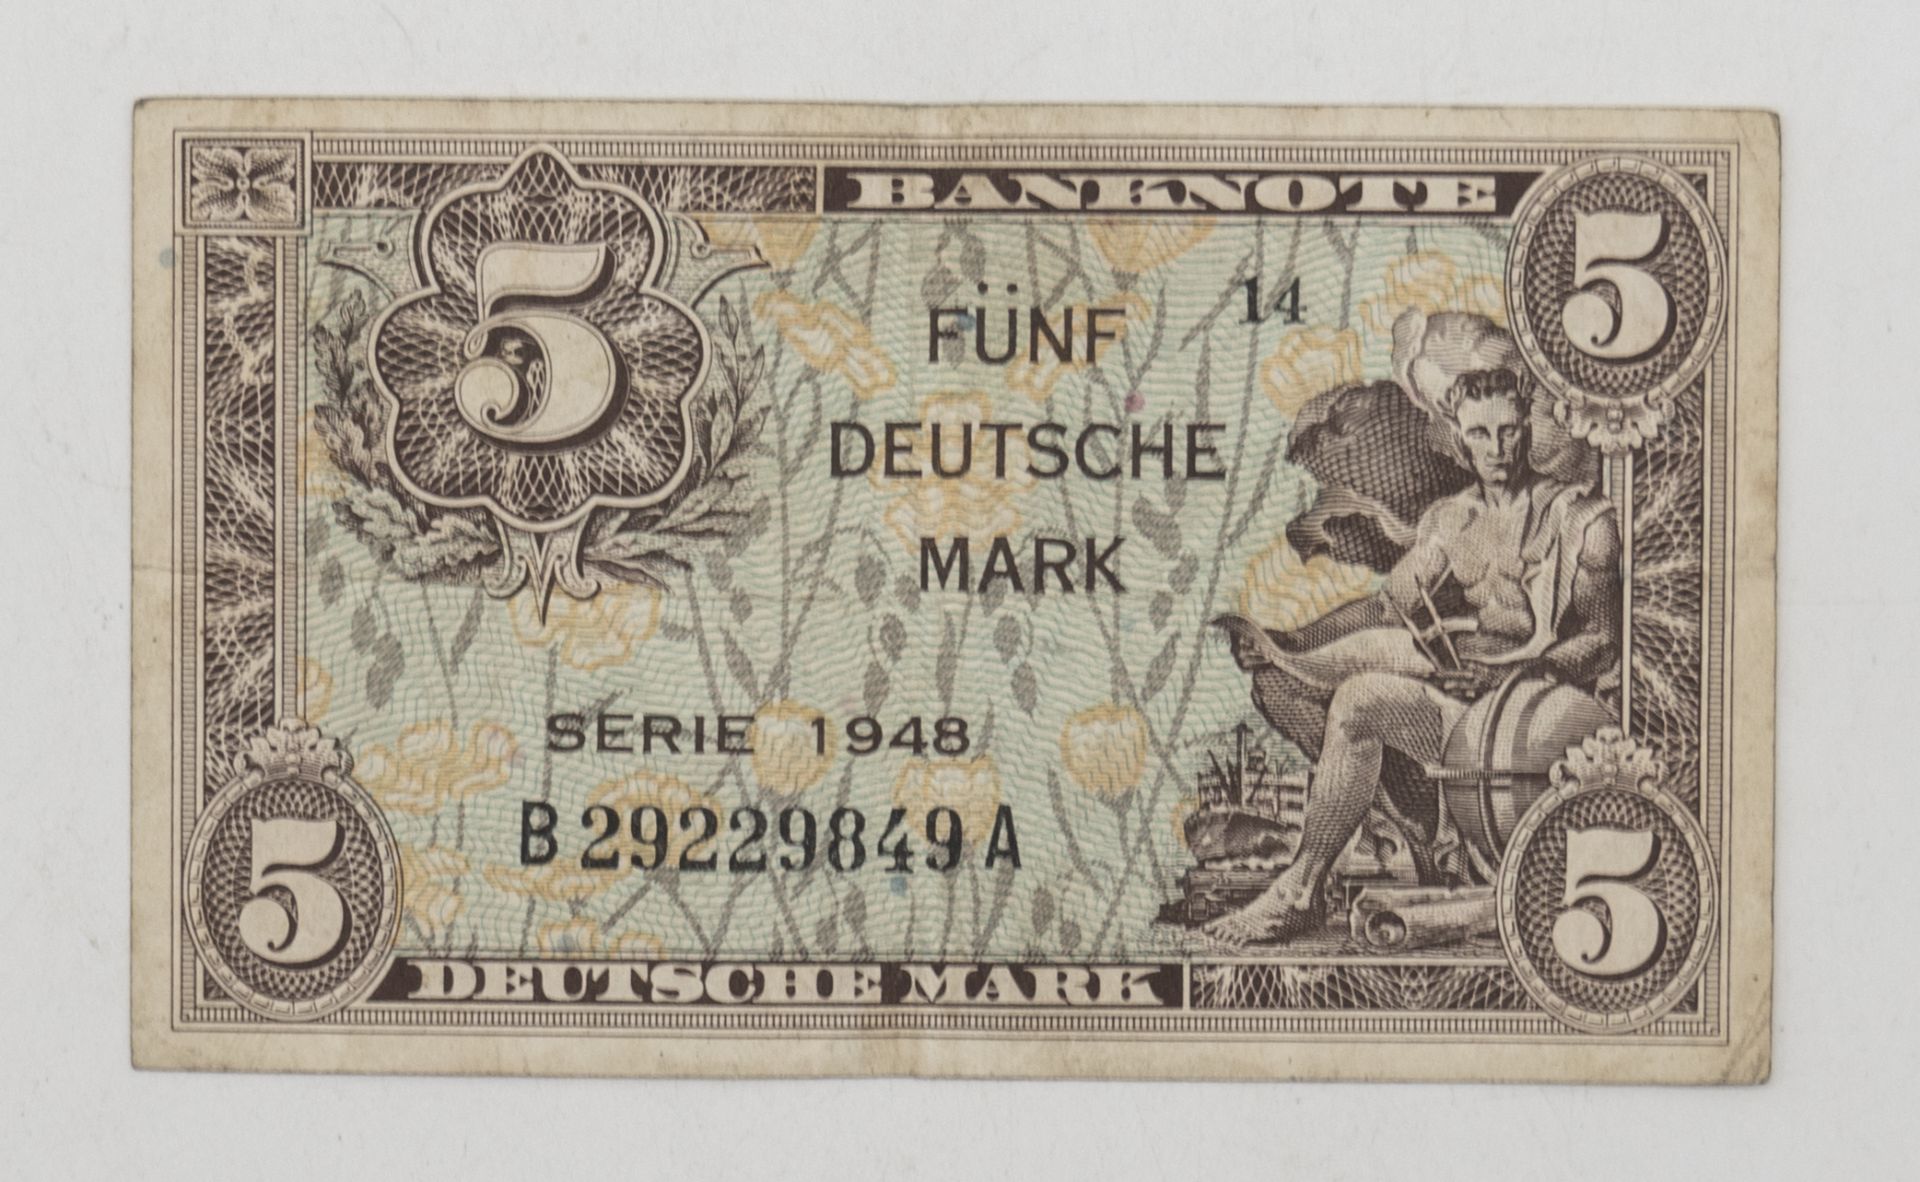 Deutschland 1948, 5 Deutsche Mark - Banknote. Erhaltung: vz.